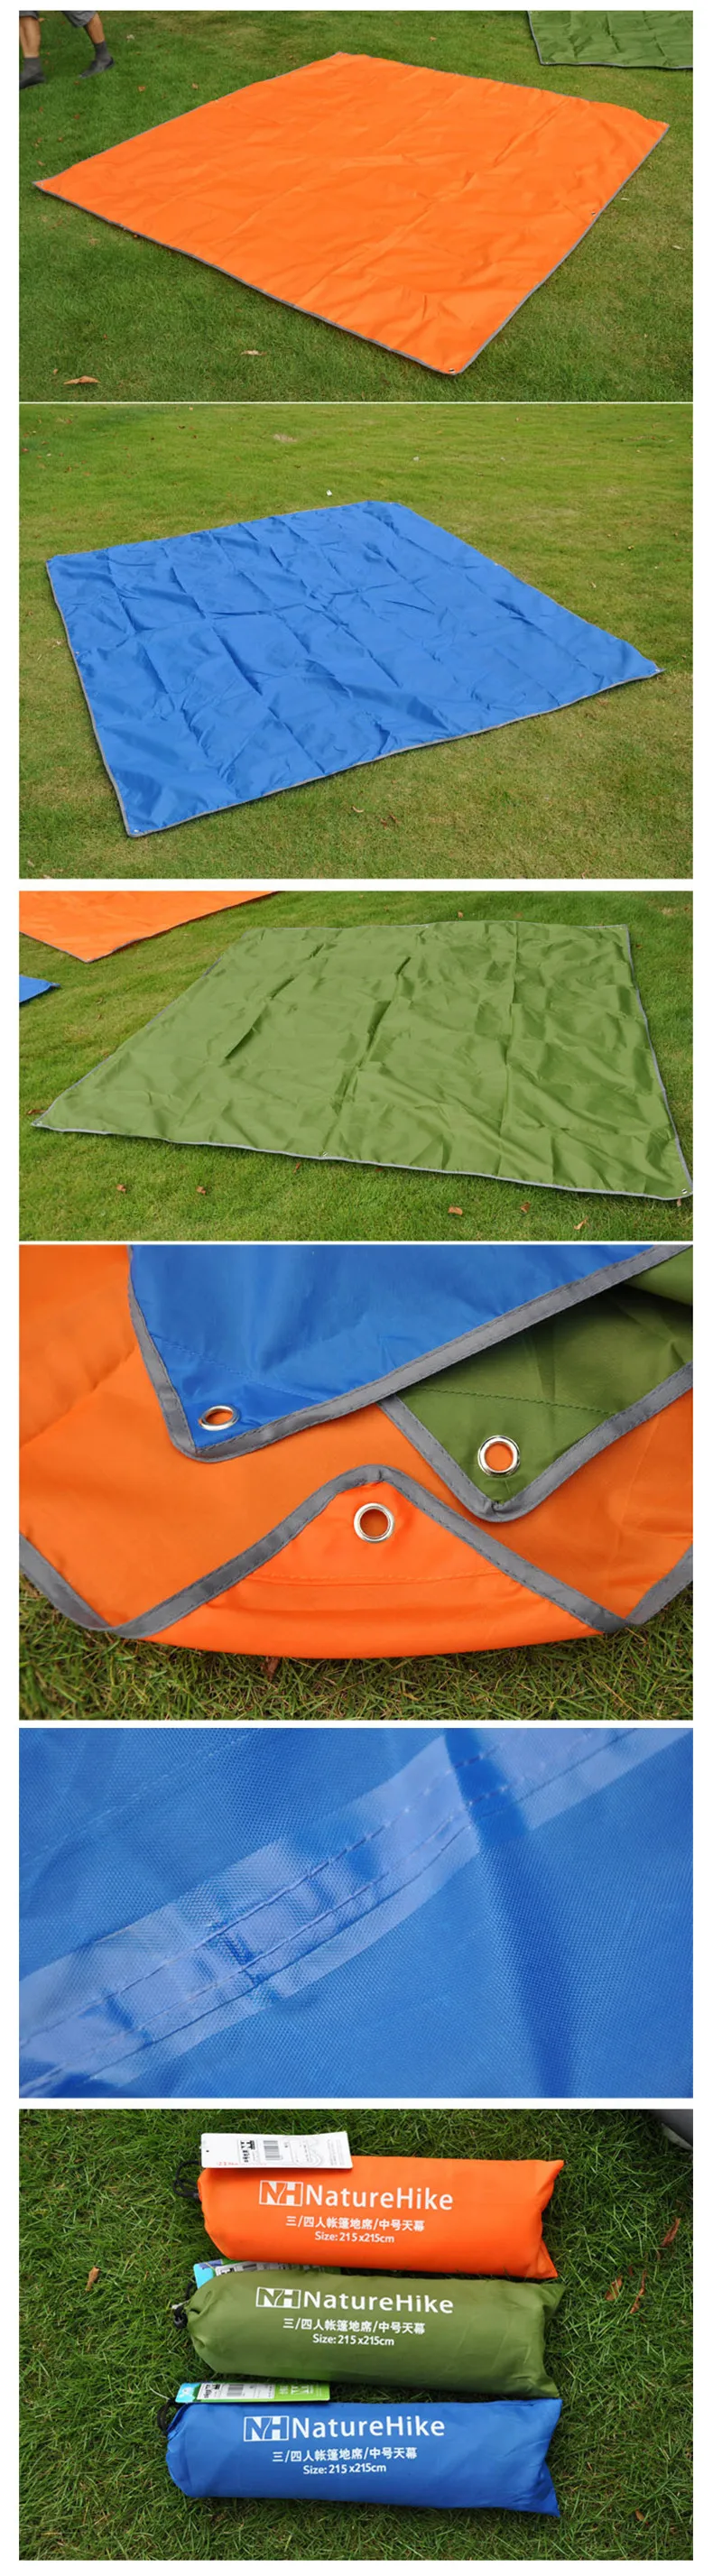 Naturehike Одежда высшего качества 2.15*1.5 м палатка Коврики Дизайн серебряным покрытием брезент палатки беседка Защита от солнца Тенты палатка синий оранжевый зеленый Открытый